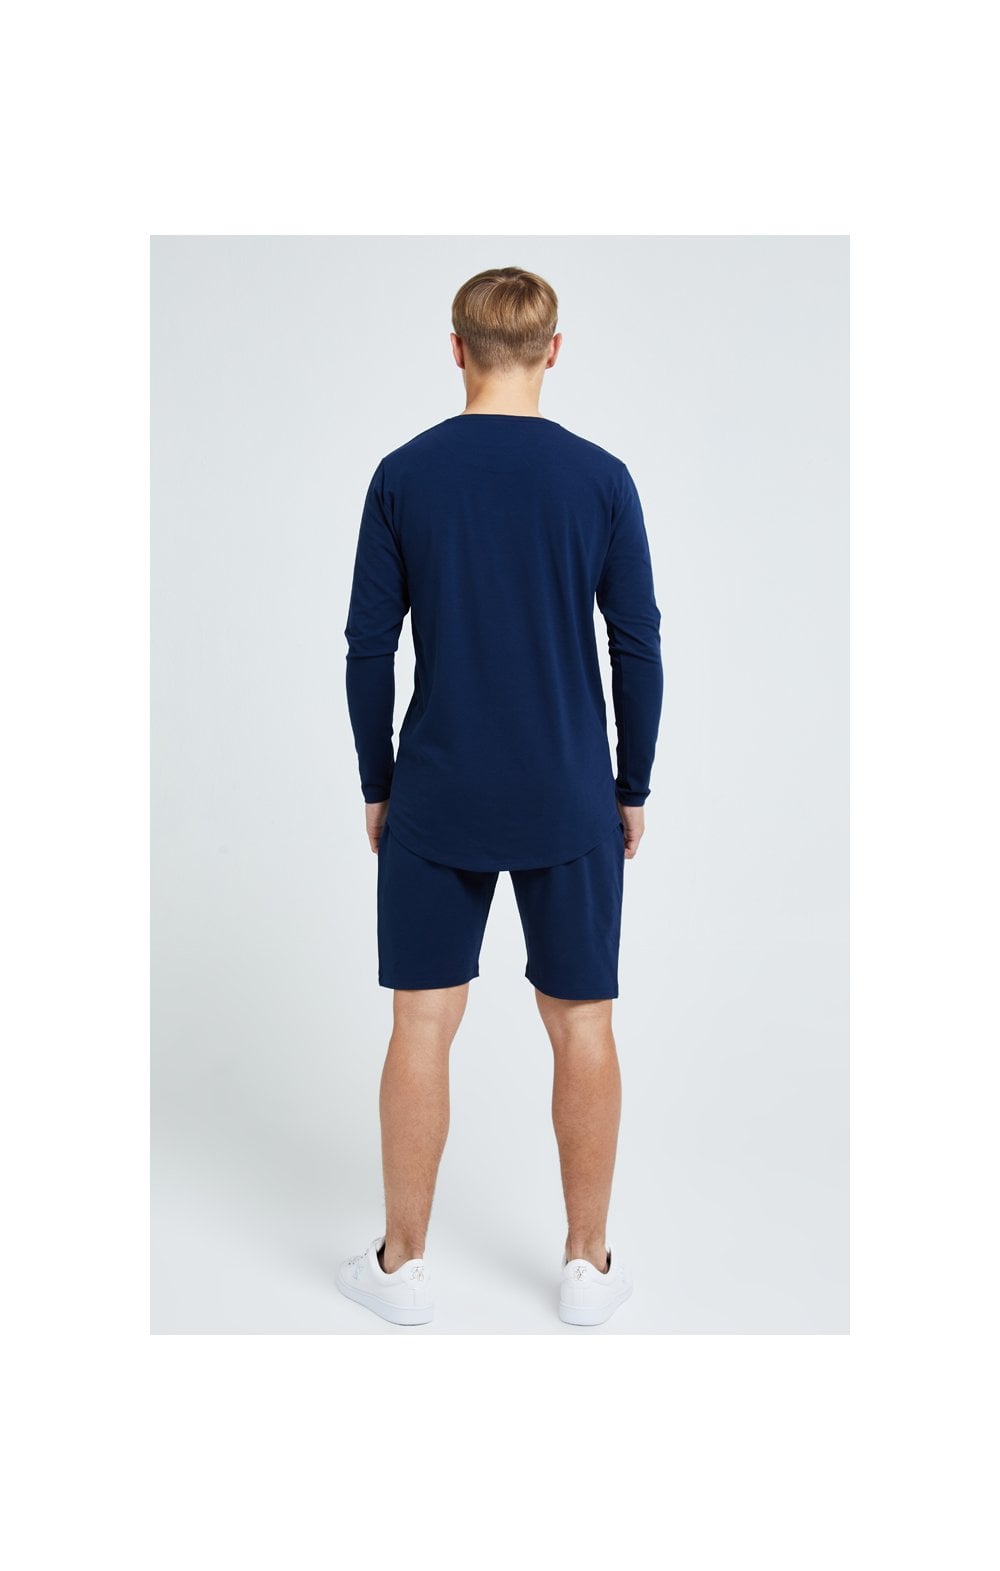 Illusive London Core Jersey Shorts - Navy (6)